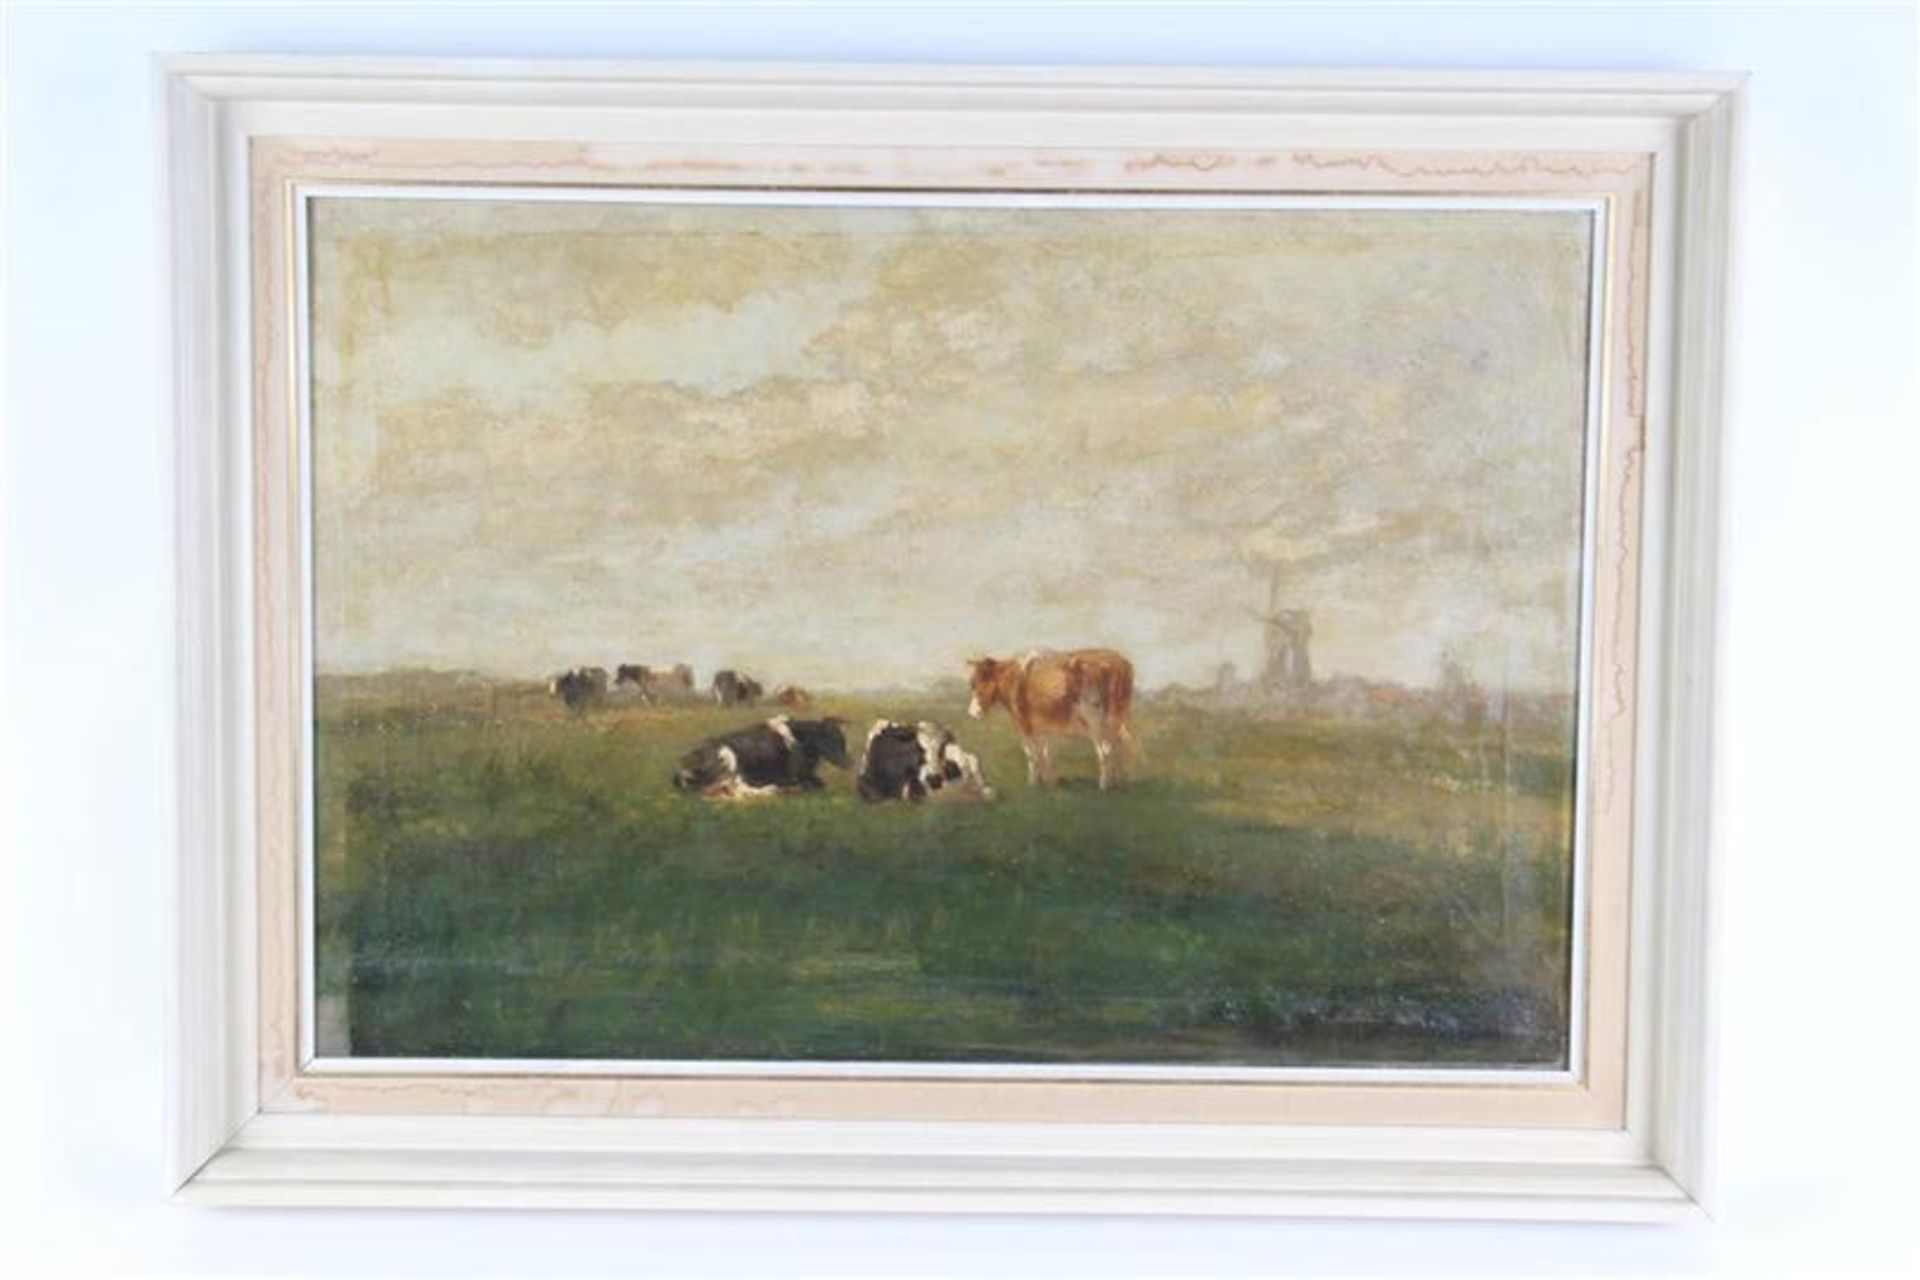 Schilderij op doek 'koeien in de wei', onduidelijk gesigneerd. HxB: 43.5 x 64 cm.